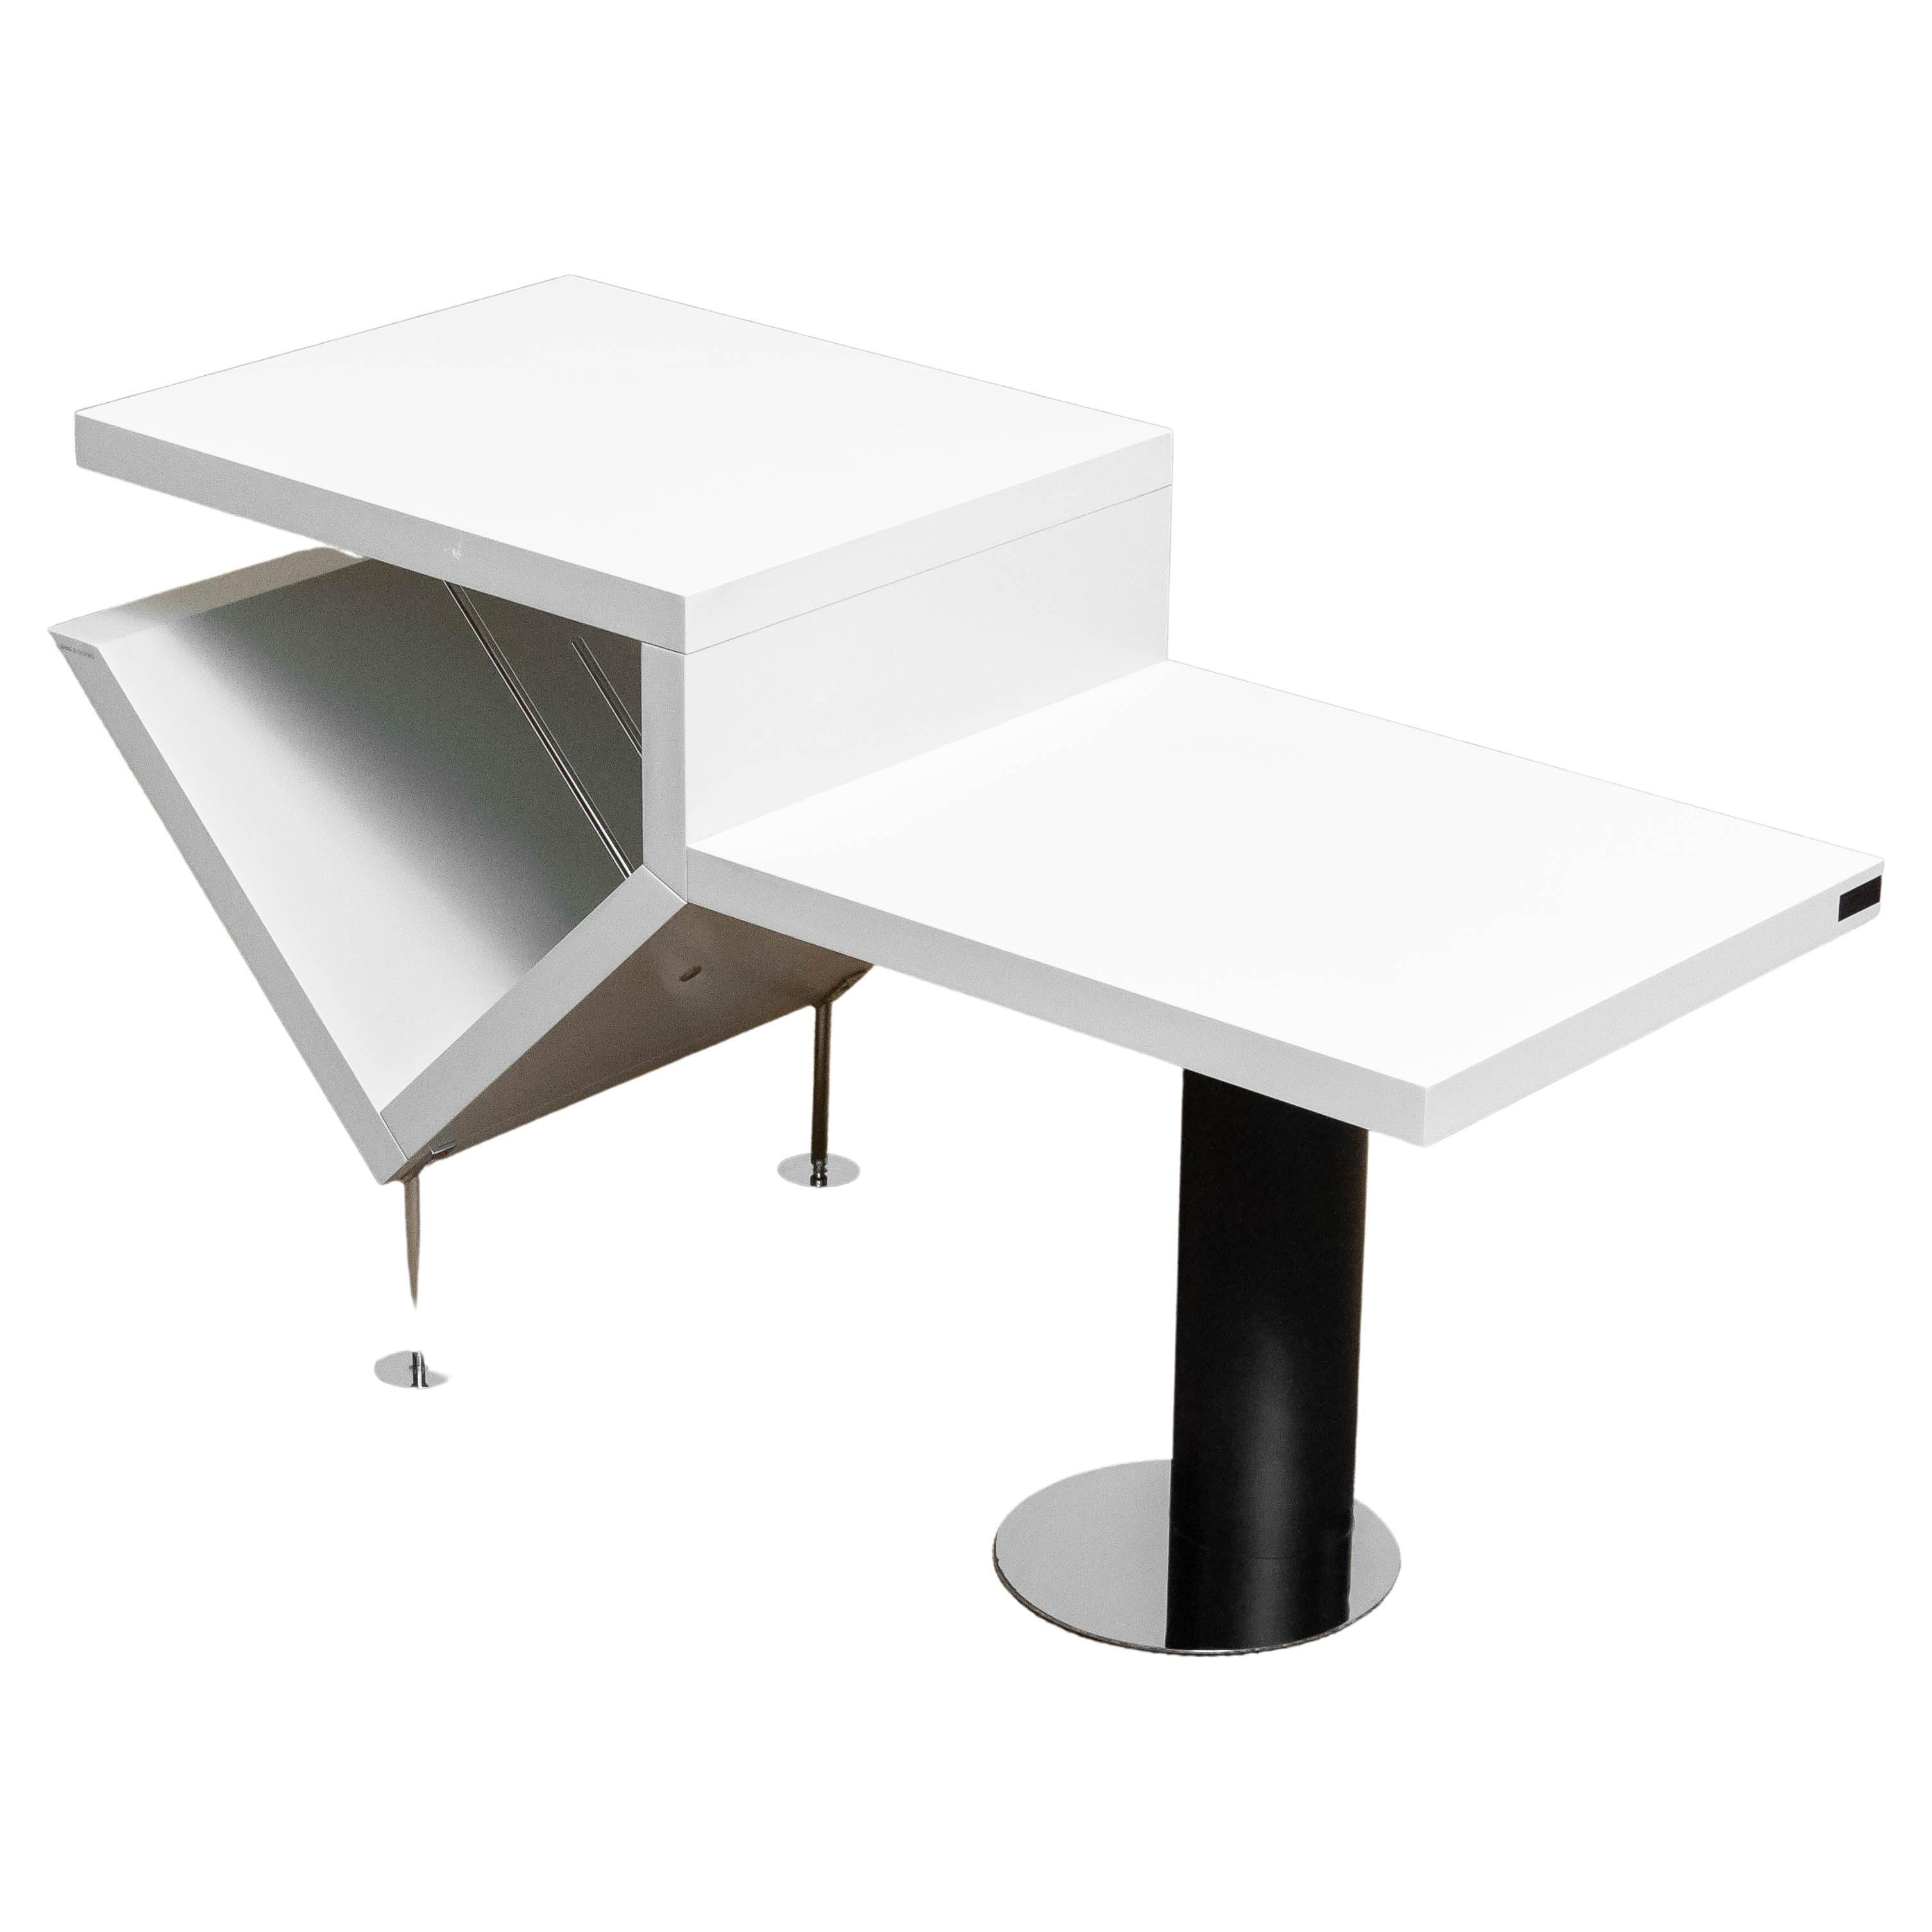 White Hifi Storage System / Table "Attyka" Serie Jacob Jensen for Bang & Olufsen